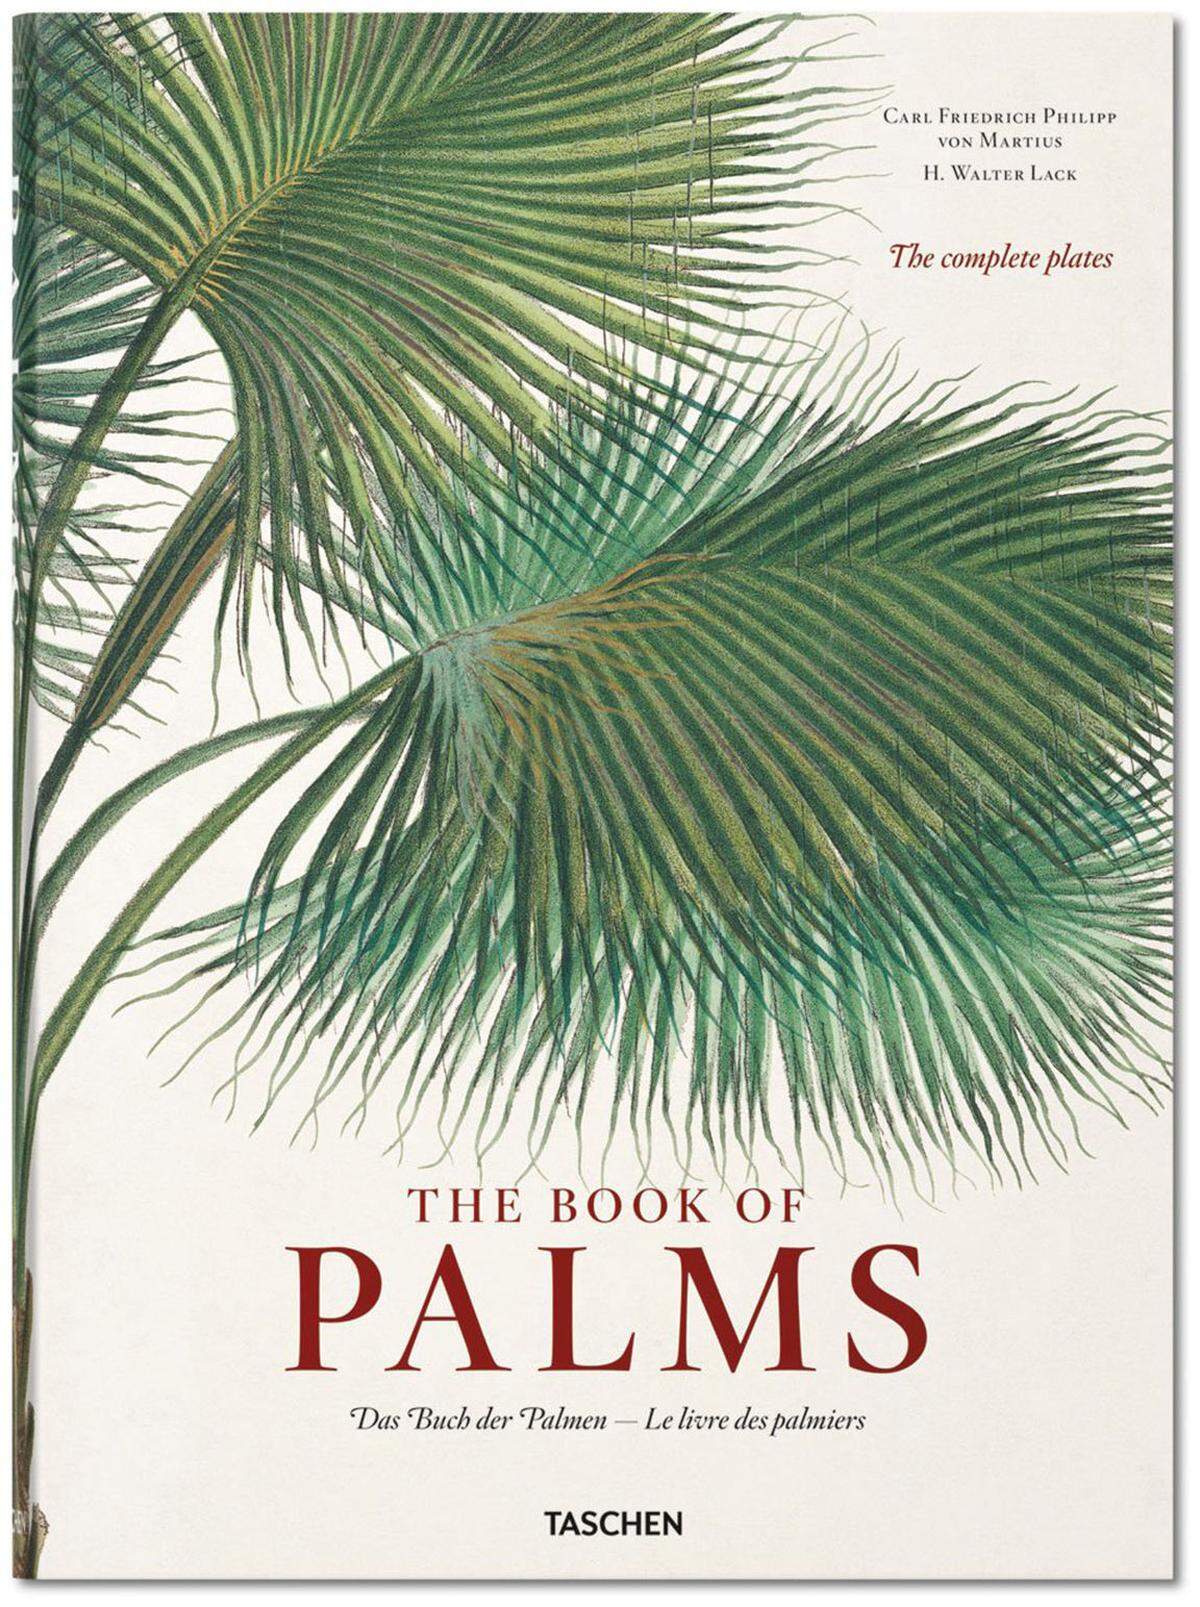 Die gesammelten Tafelbilder des „Vater der Palmen“ gibt es in diesem Sammelband von Taschen zu entdecken. Erhältlich ab Juli.